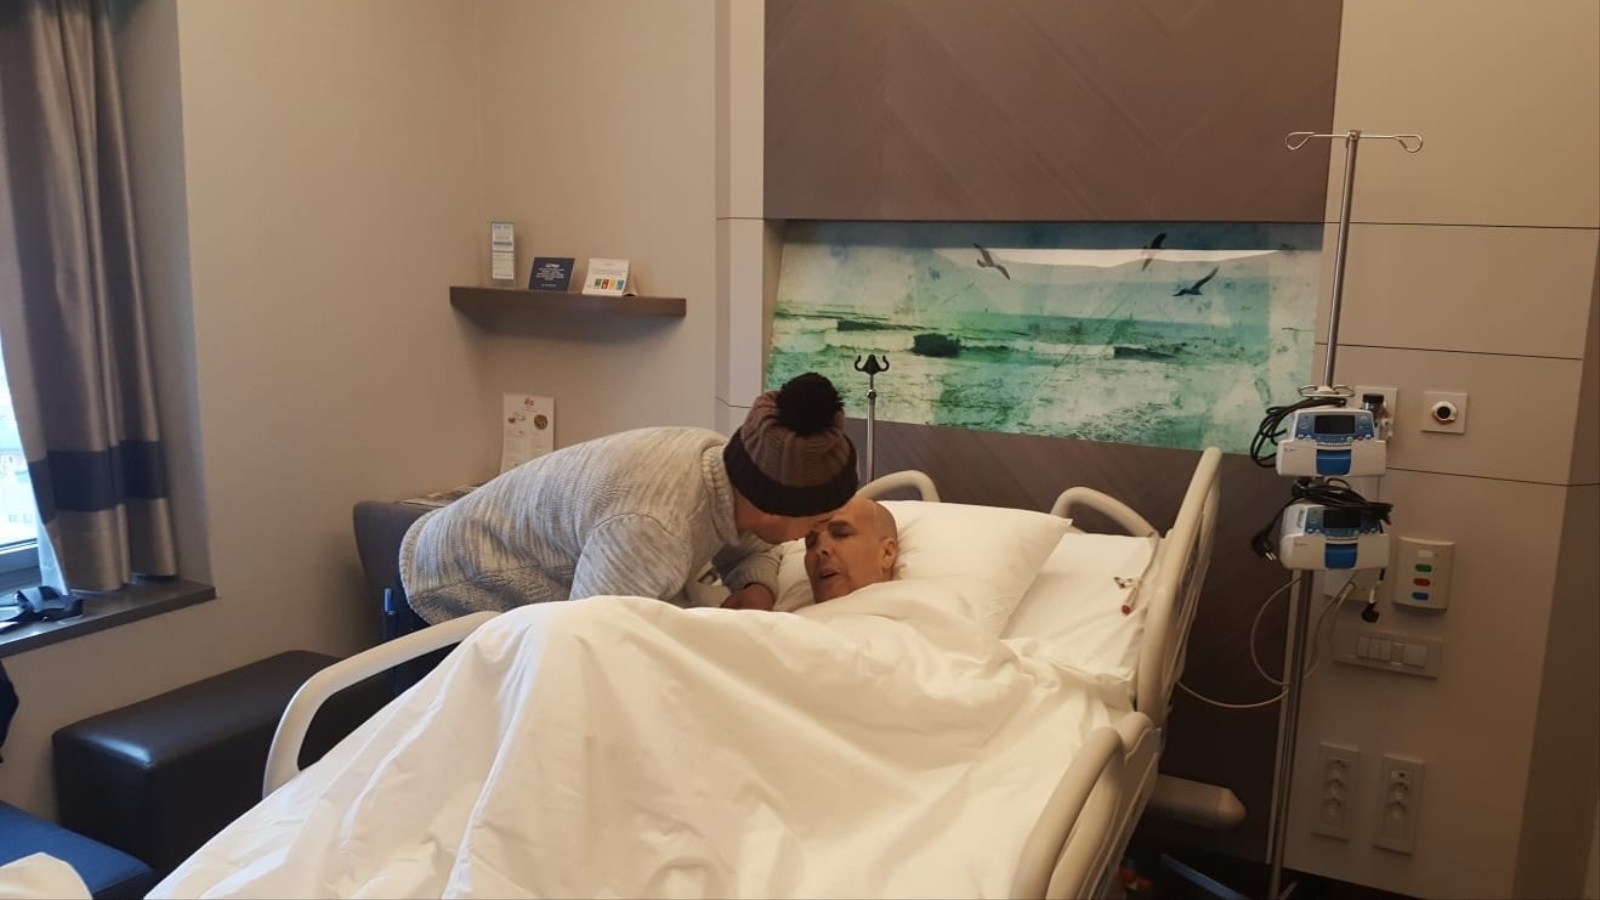 طارق برفقة أبيه داخل المستشفى في رحلة العلاج الثانية بتركيا في مارس/آذار 2019 (التواصل الاجتماعي)